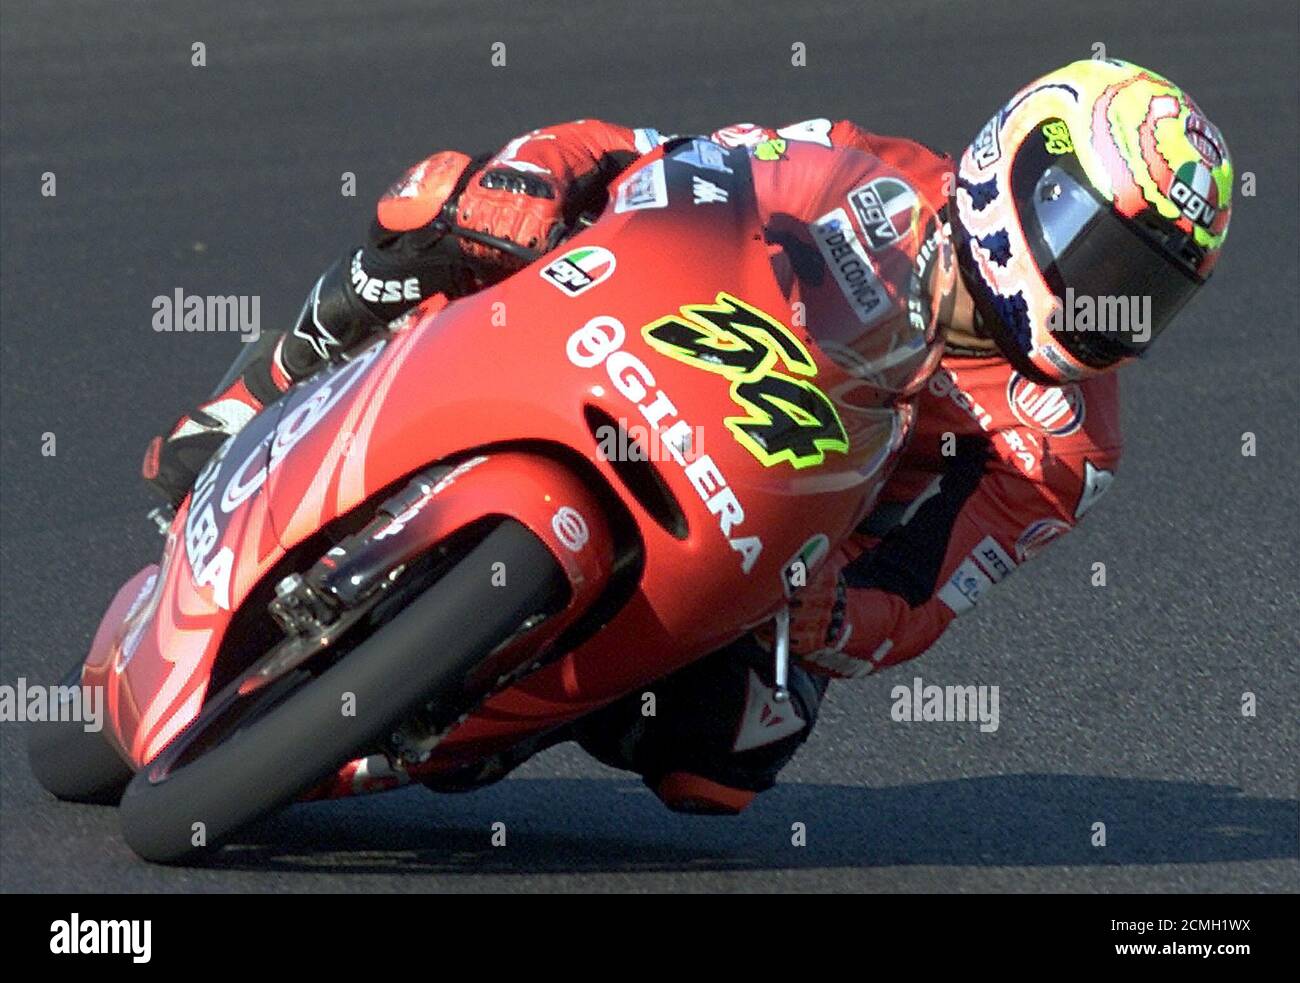 El motociclista de 125 cc de la República de San Marino, Manuel Poggiali,  en una Gilera, toma una curva durante la clasificación para el Gran Premio  de Portugal el 8 de septiembre